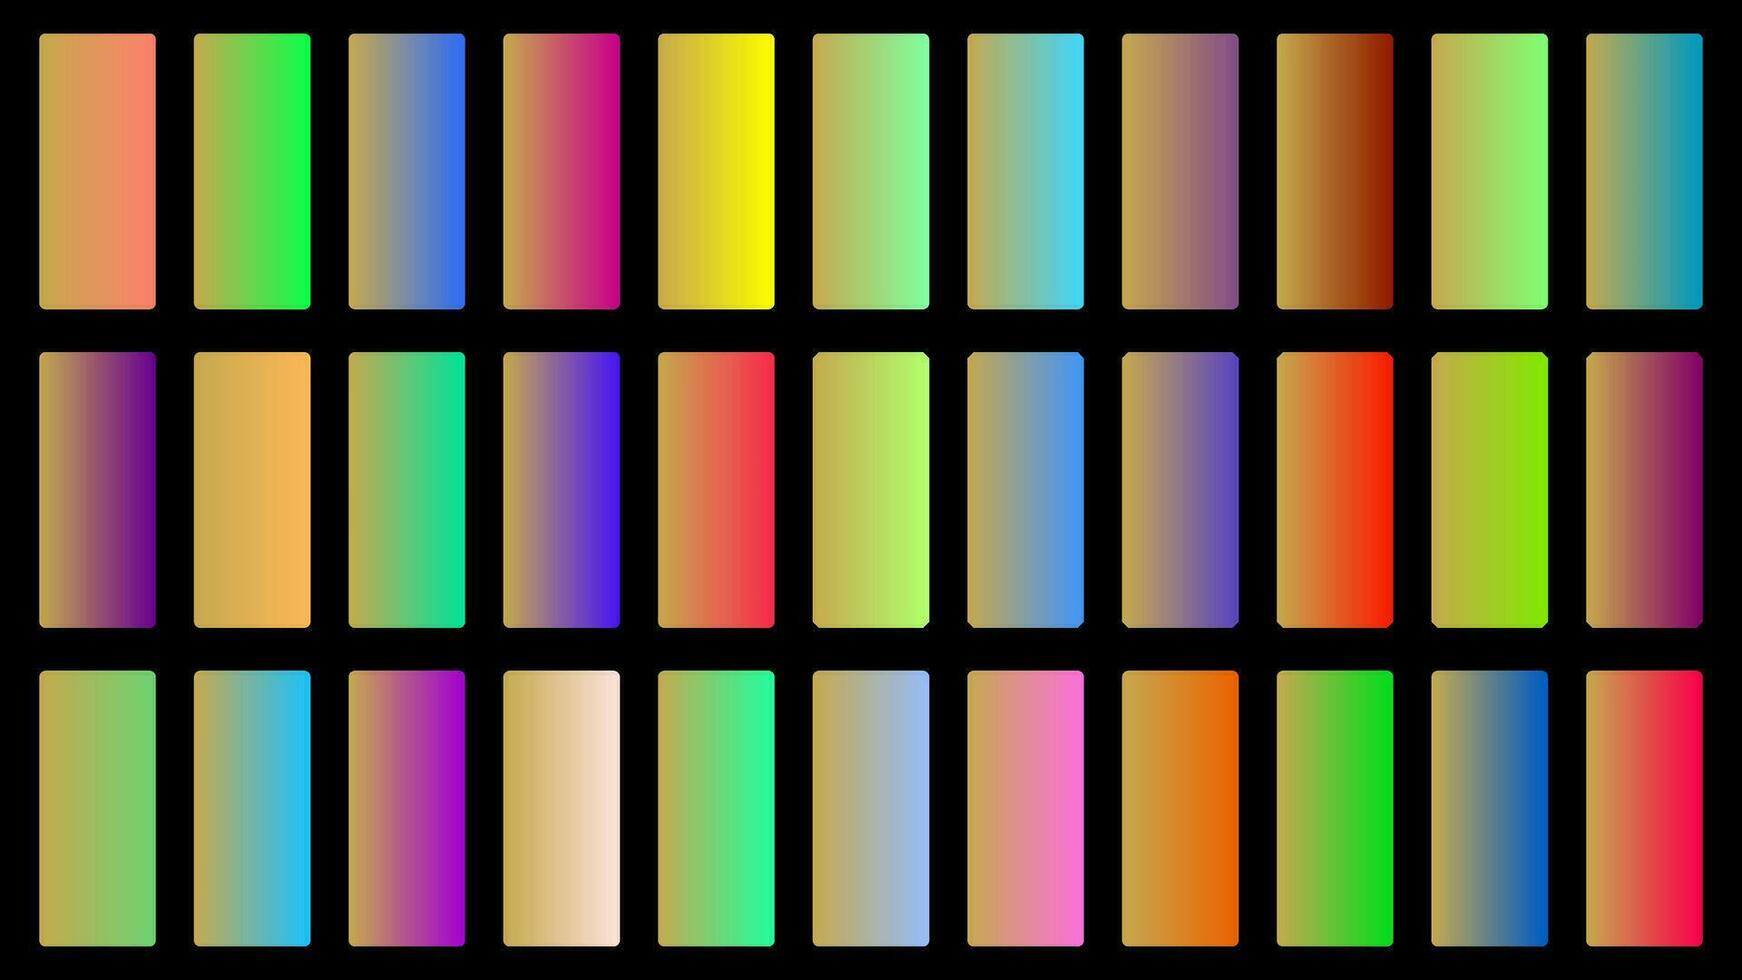 coloré faon Couleur ombre linéaire pente palette échantillons la toile trousse arrondi rectangles modèle ensemble vecteur